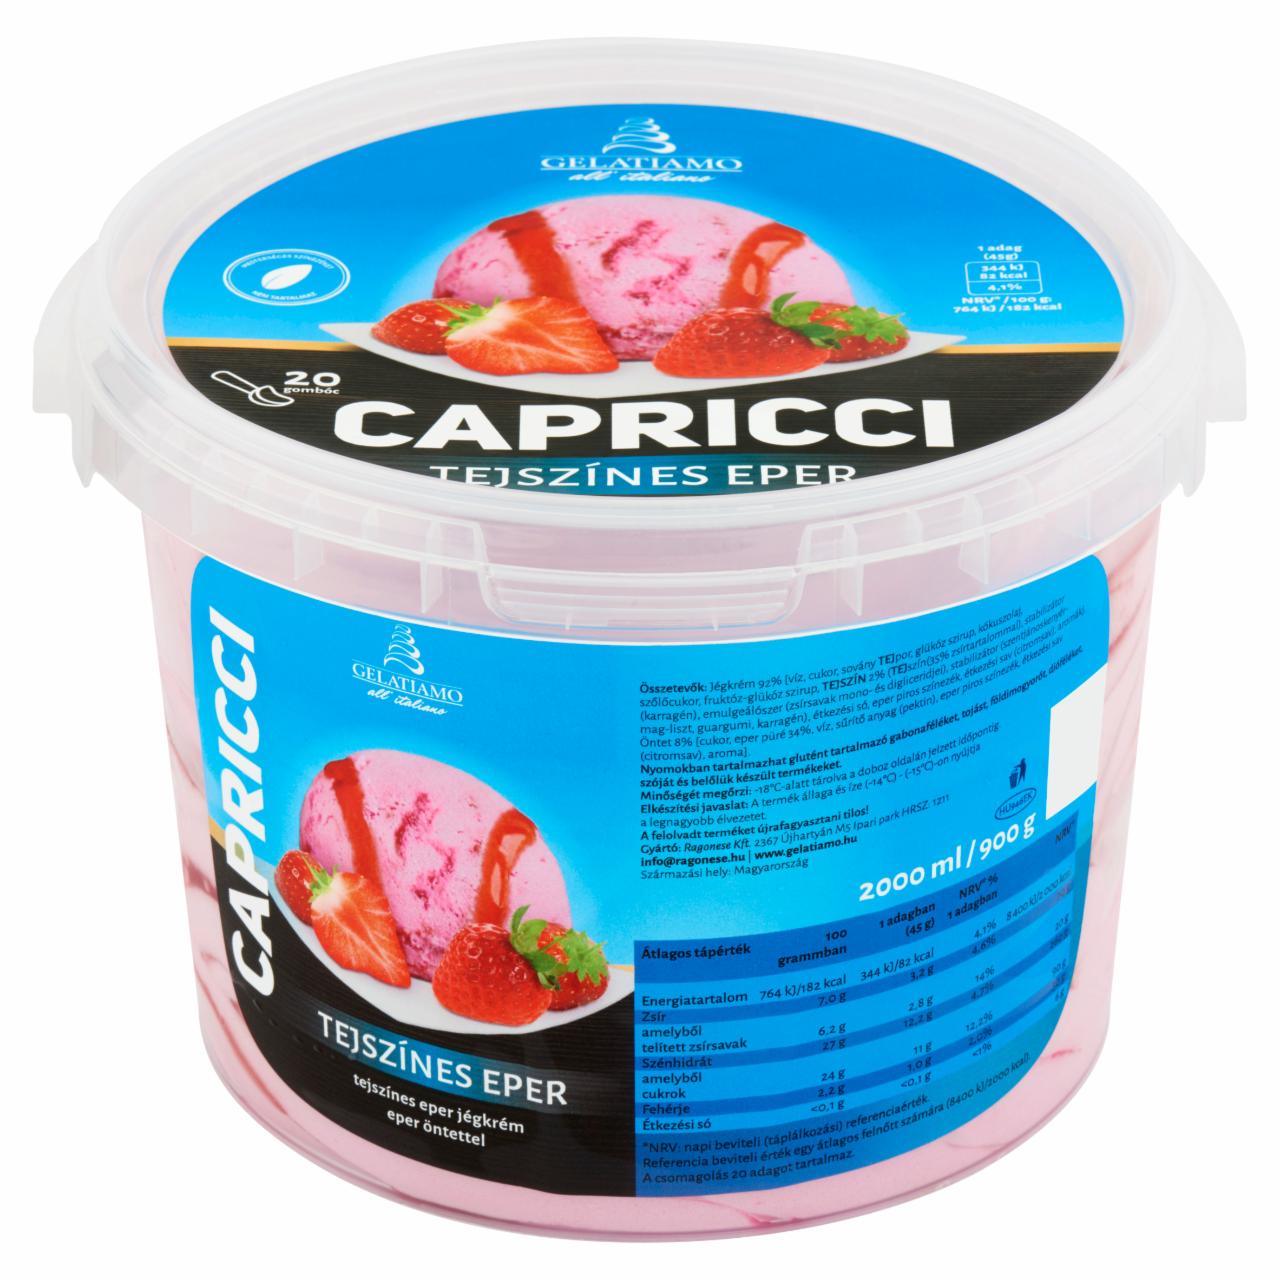 Képek - Gelatiamo Capricci tejszínes eper jégkrém eper öntettel 2000 ml